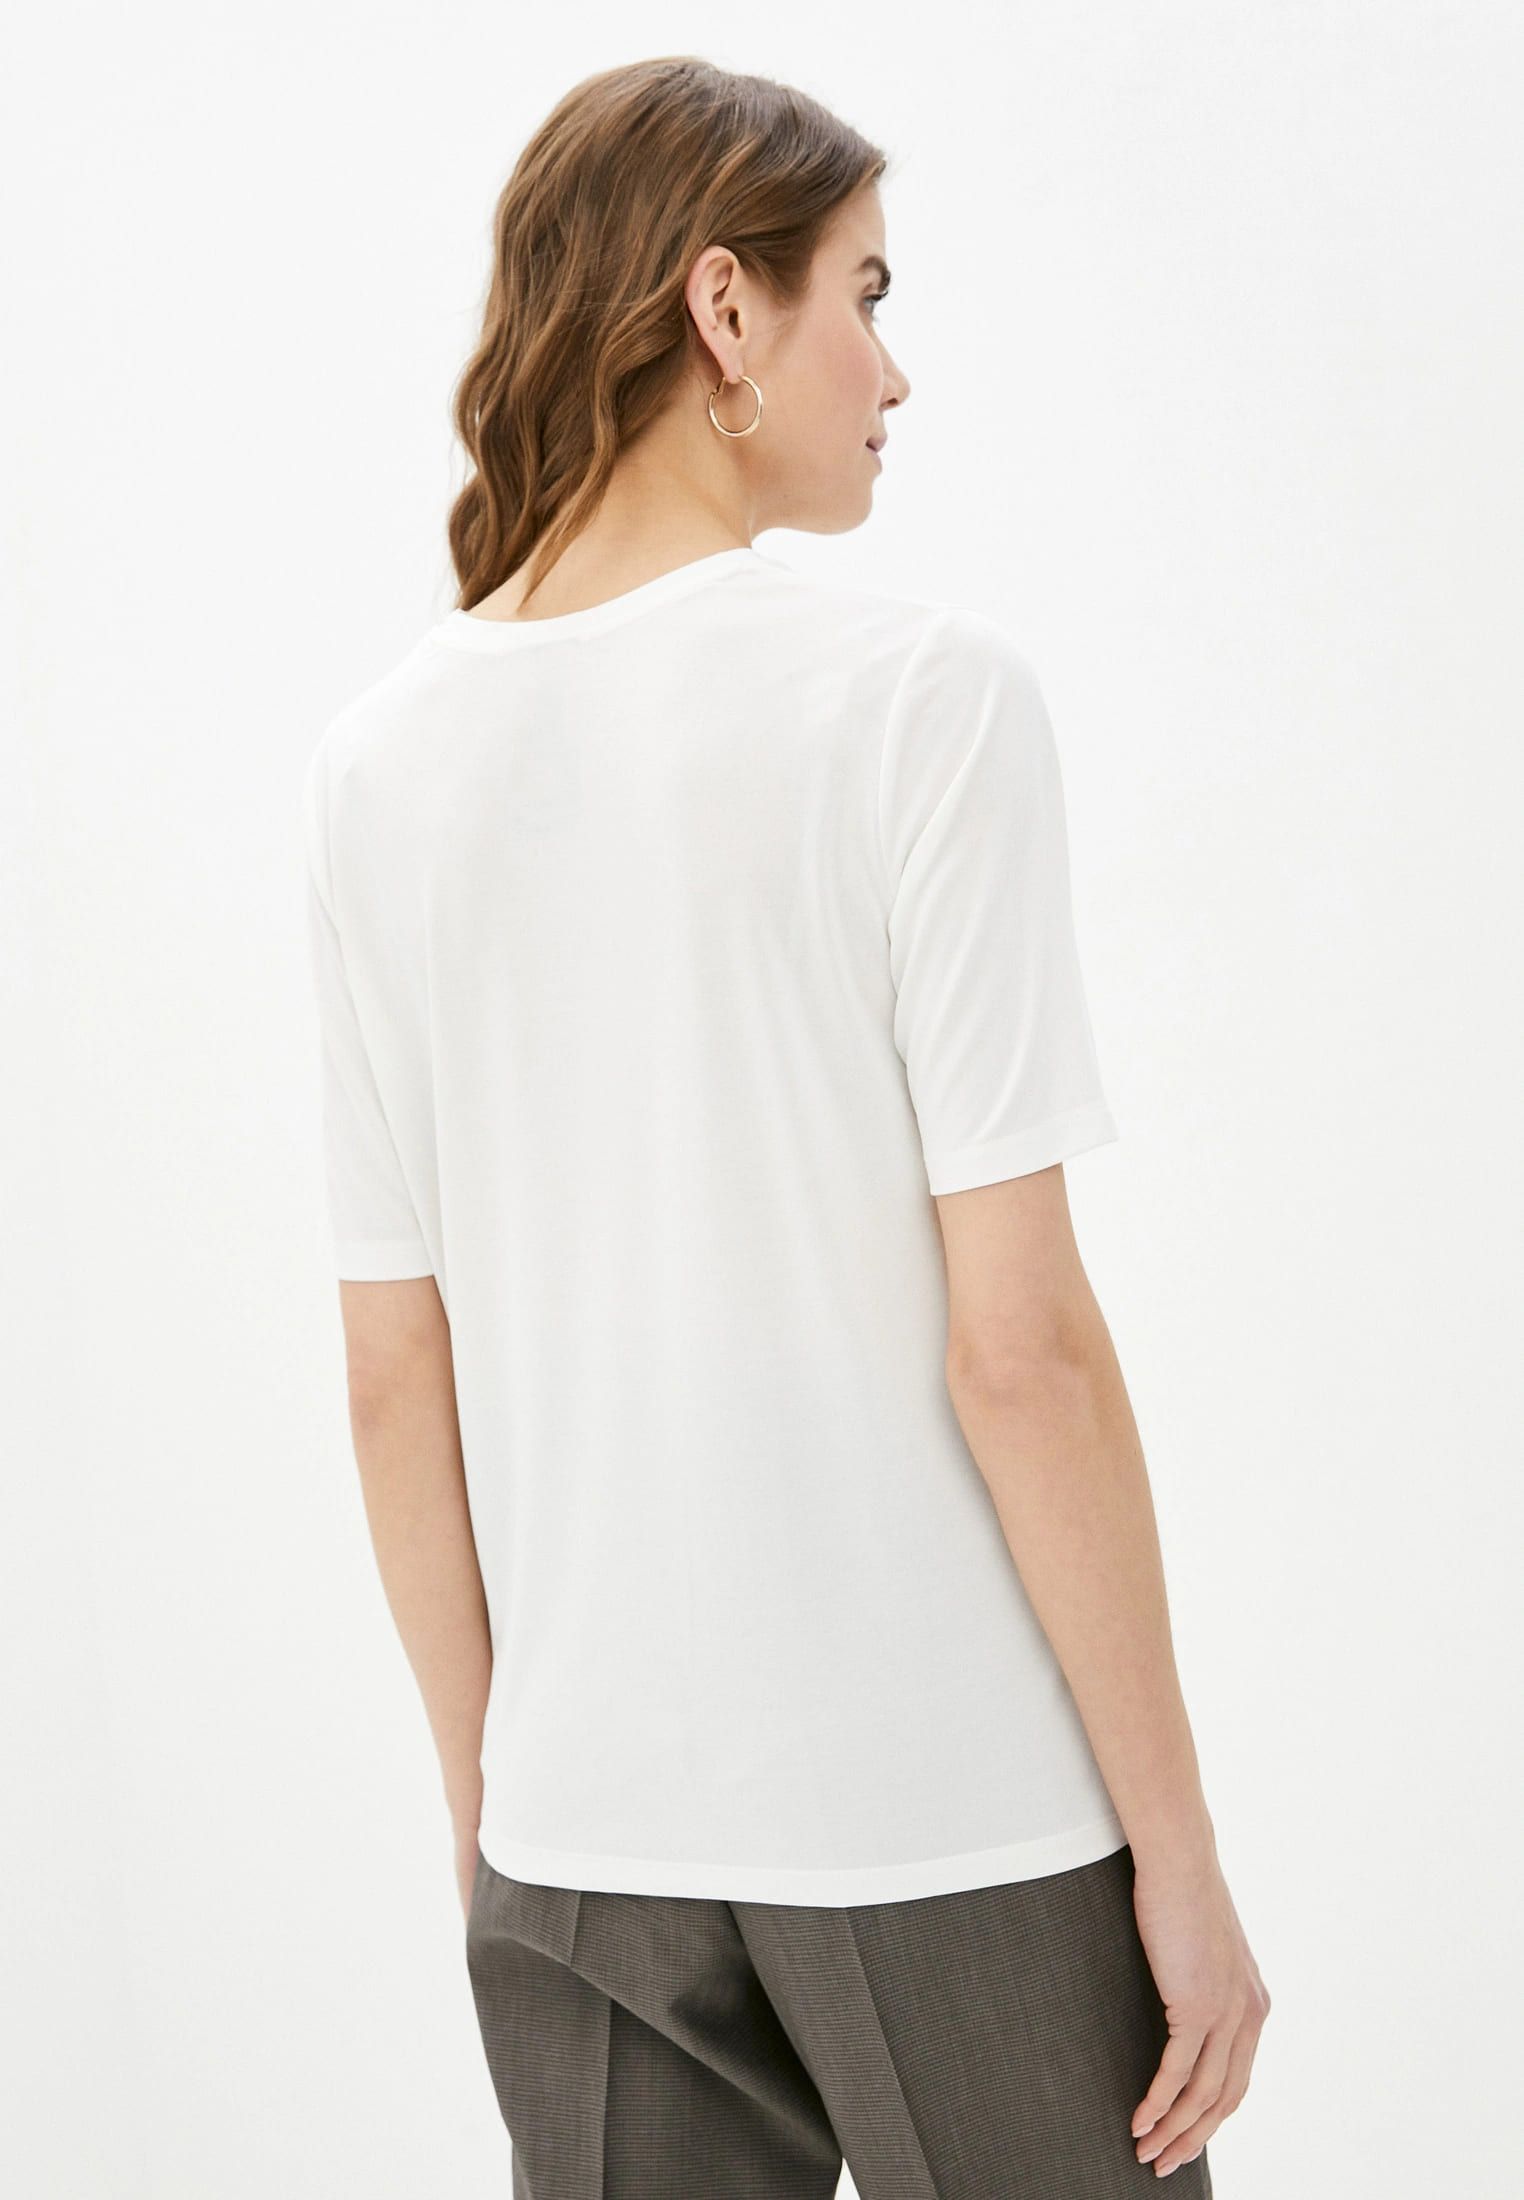 Белая базовая футболка CINIS из эко-ткани «модал». Изображение 2